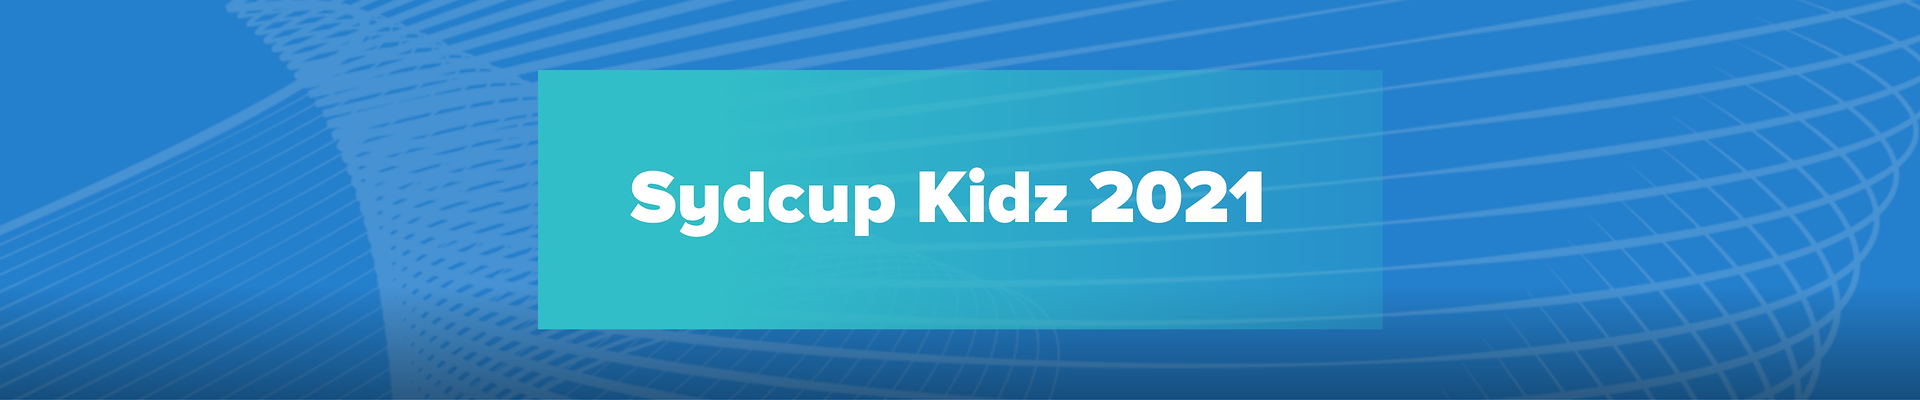 Syd Cup Kidz 2021 - afdeling 4 - Rødekro CC